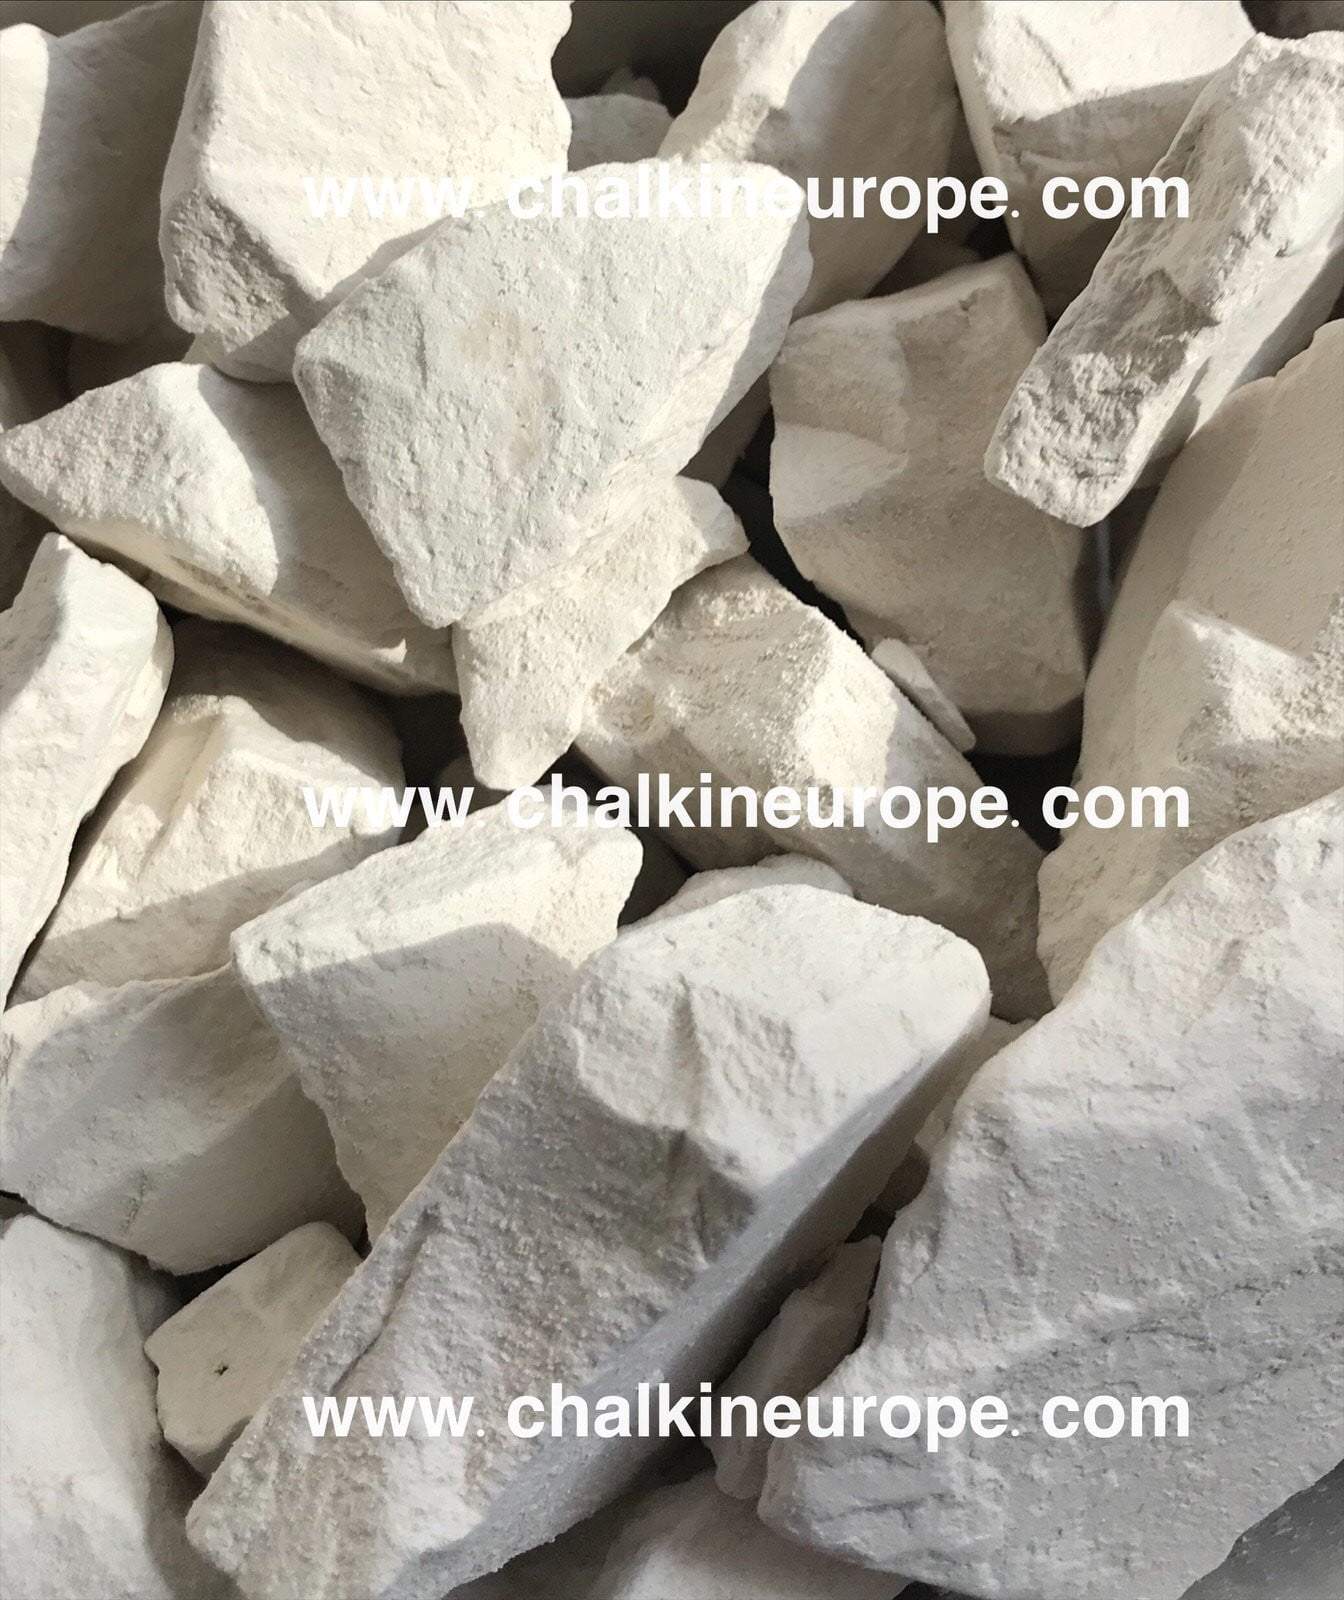 Cietais baltais māls - Chalkineurope